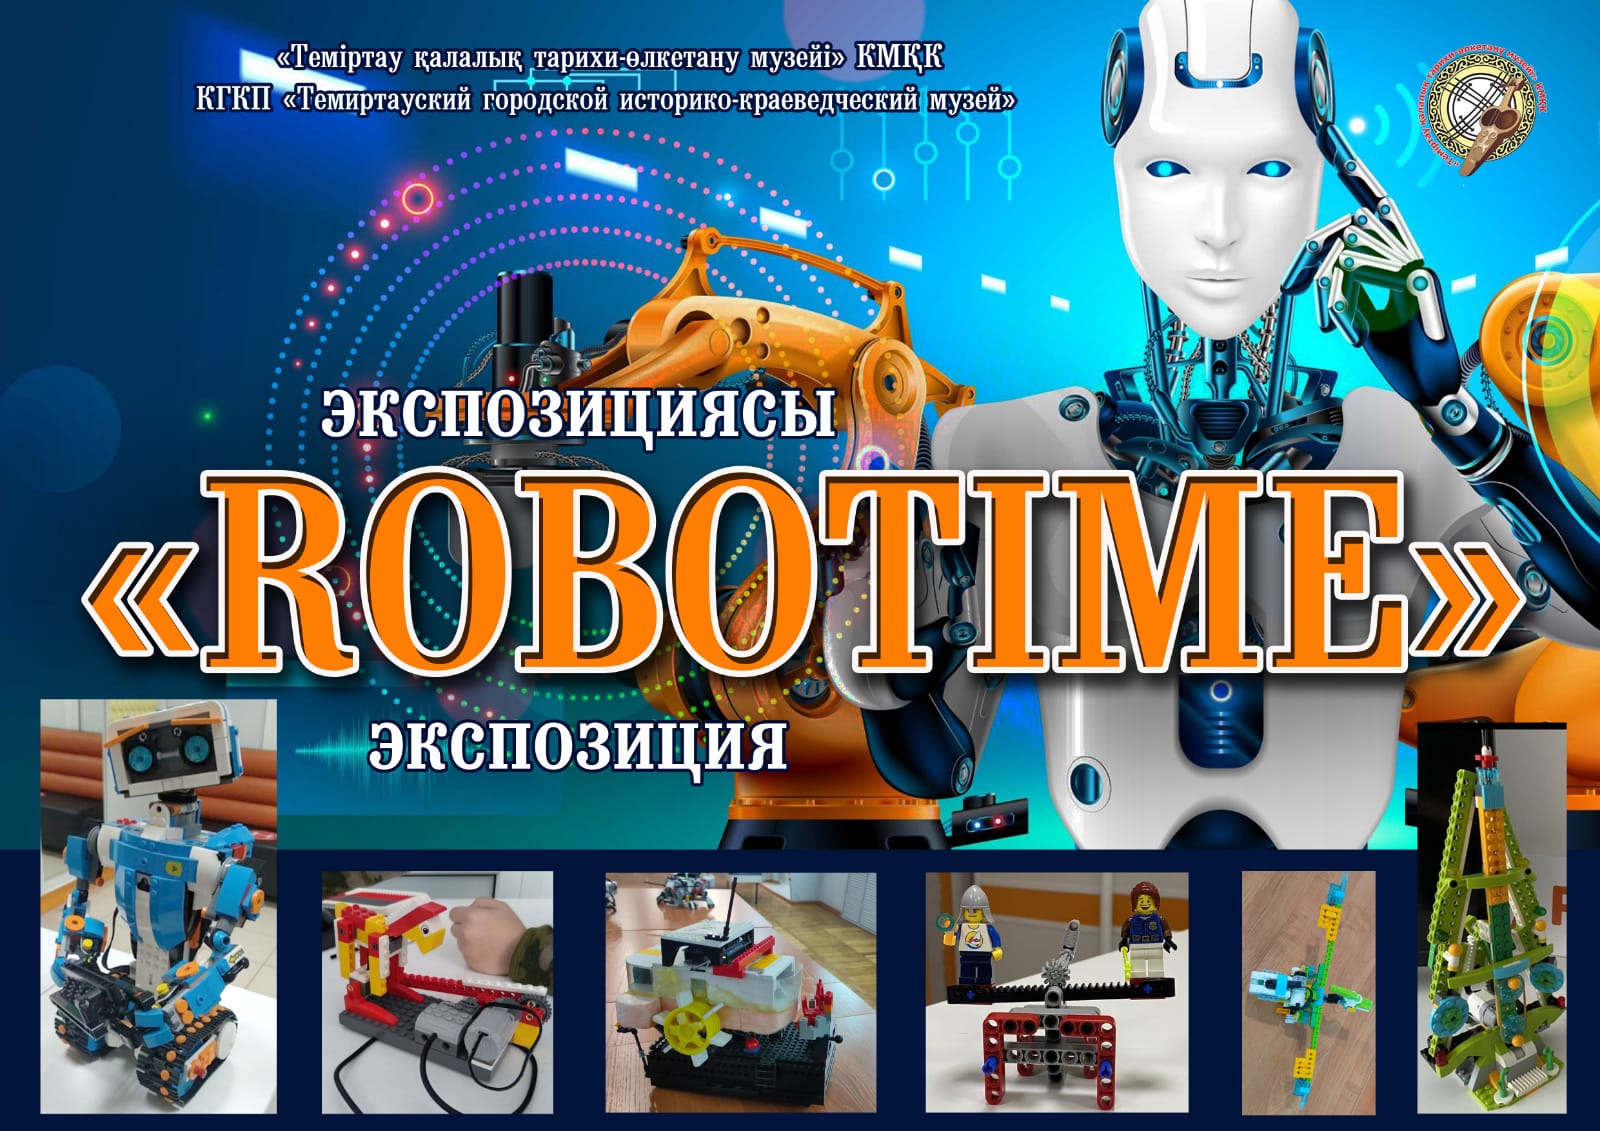 Узнать больше о роботах и увидеть их в действии можно в темиртауском музее